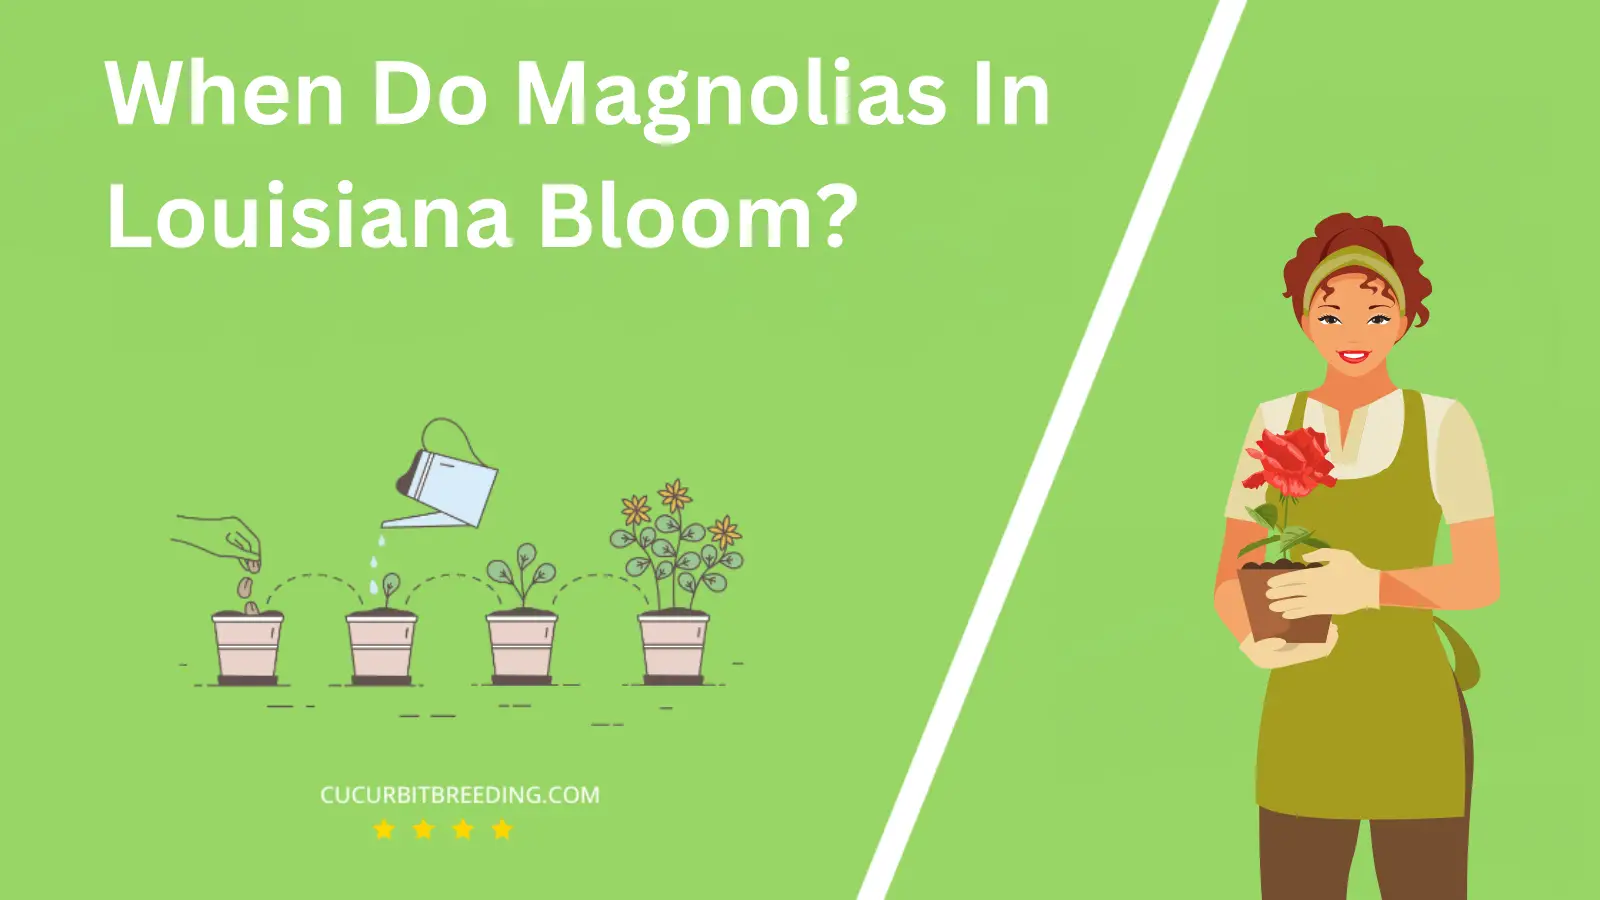 When Do Magnolias In Louisiana Bloom?